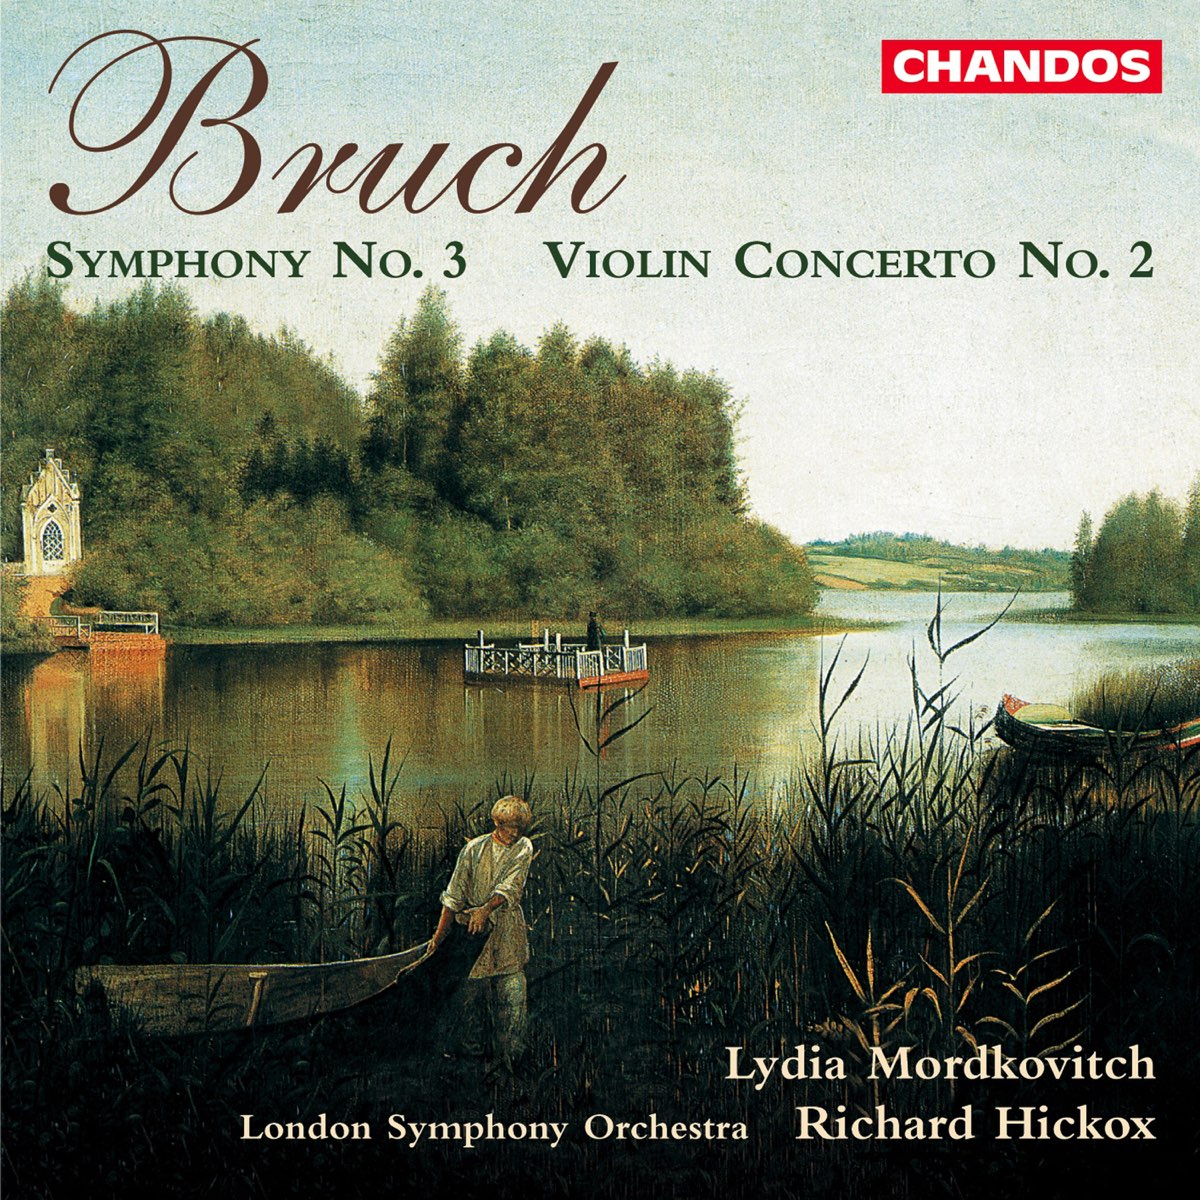 Violin concerto no 2. Friedrich 2 Symphony no 3.